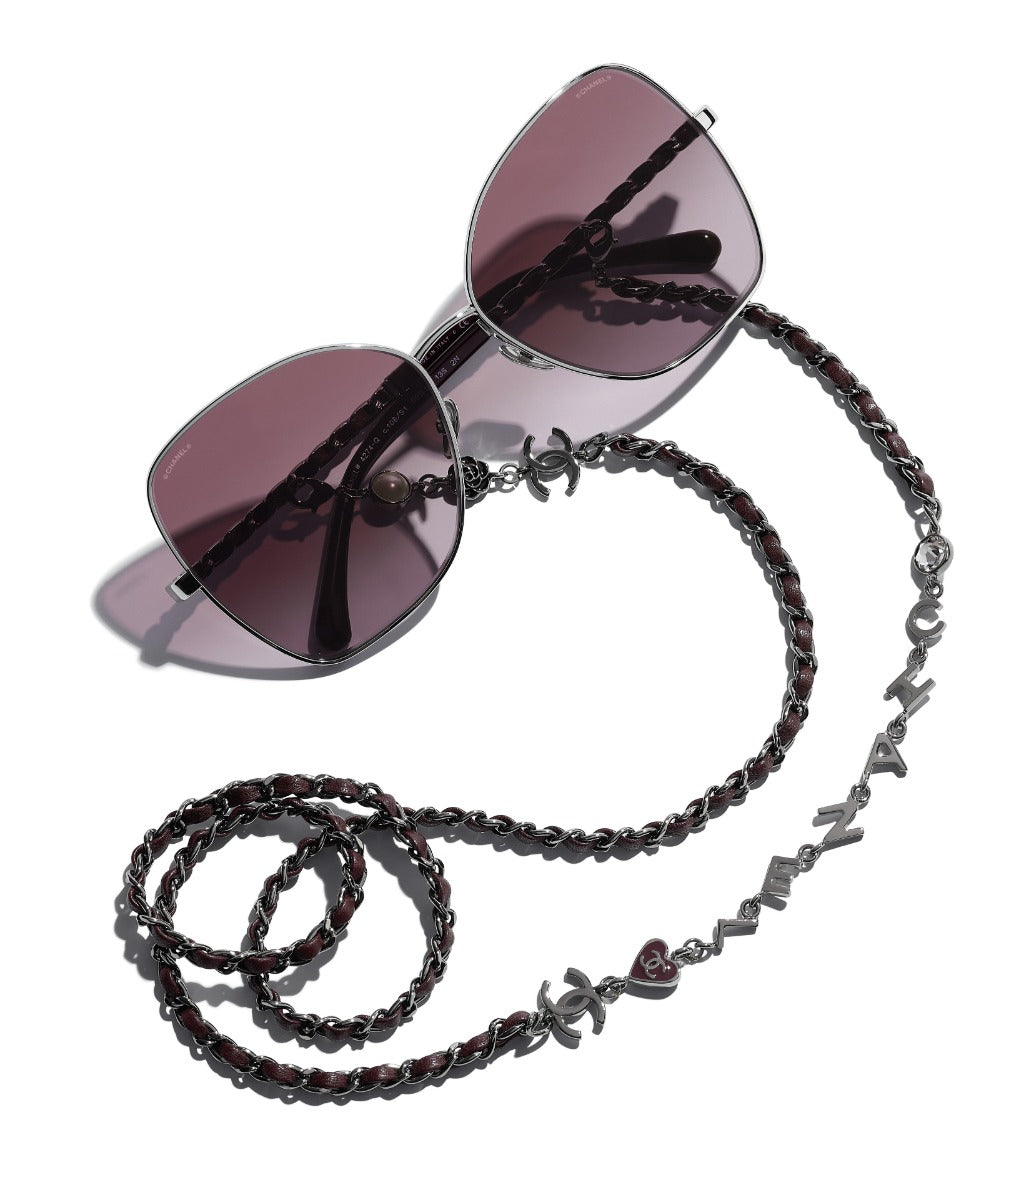 CHANEL 4274Q Butterfly Metal & Calfskin Sunglasses